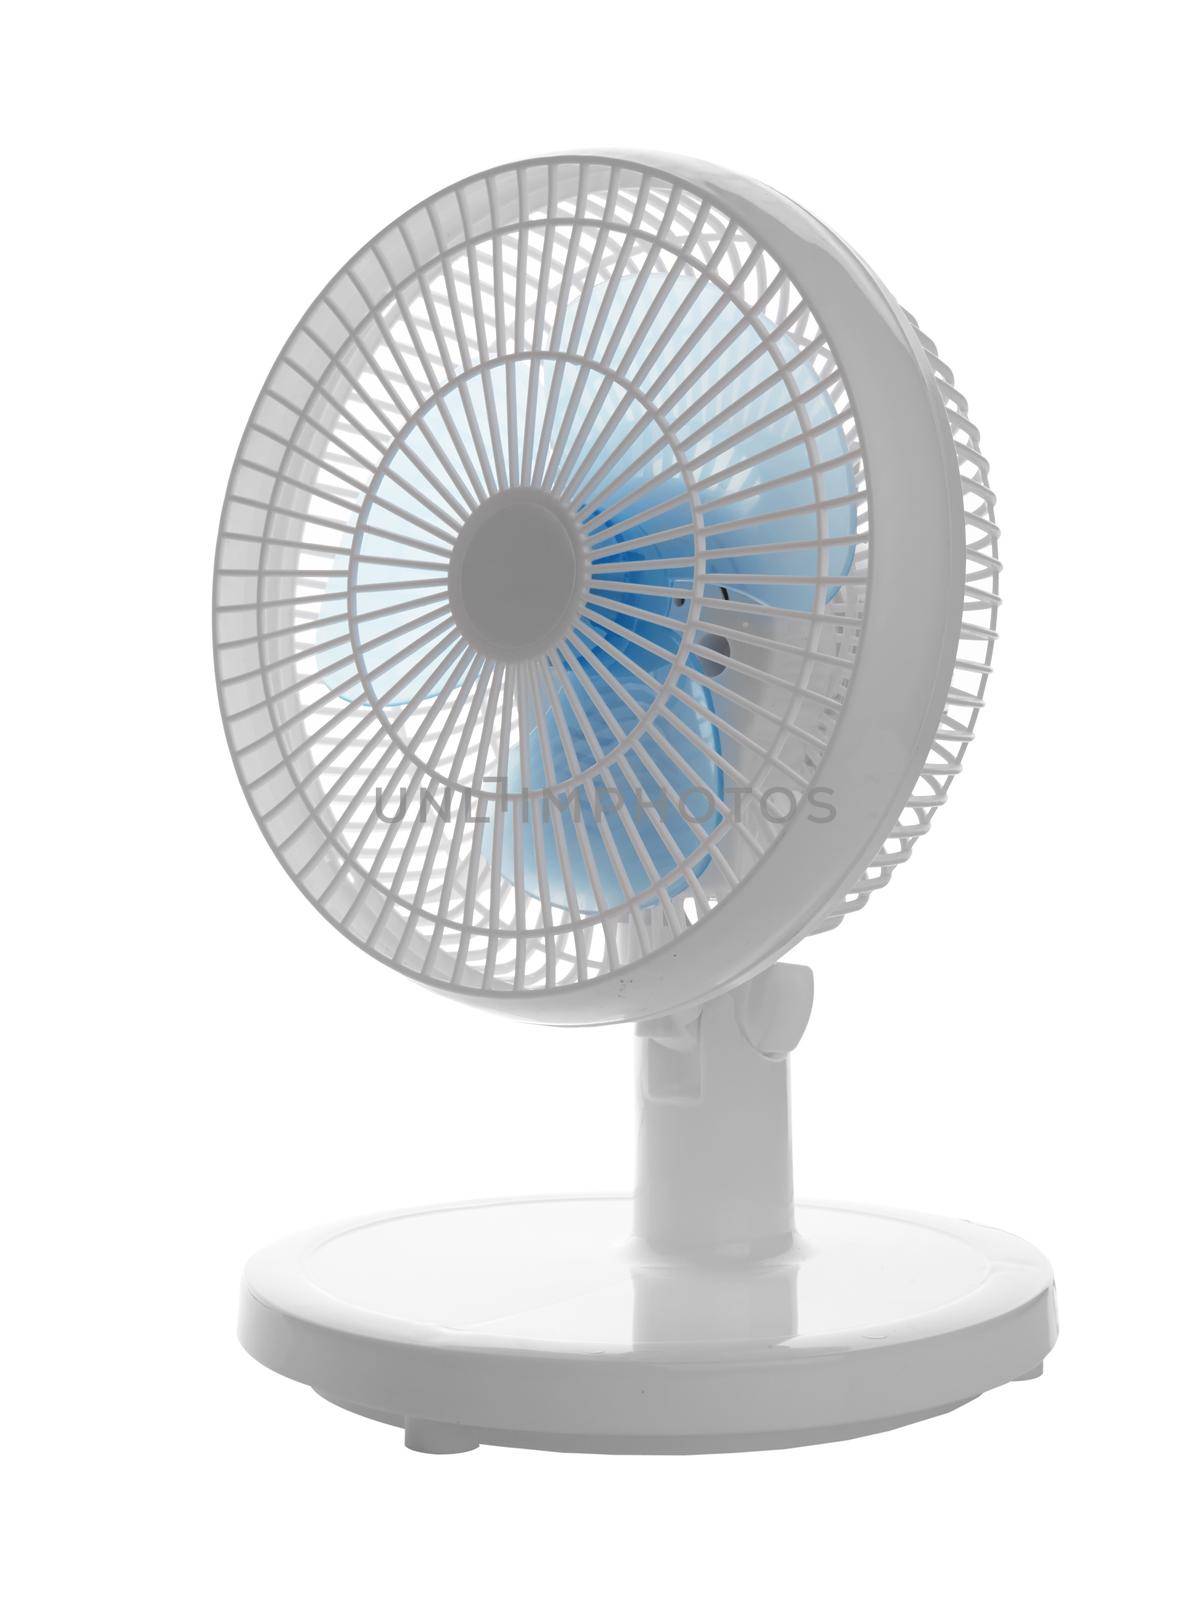 White electric fan by pioneer111